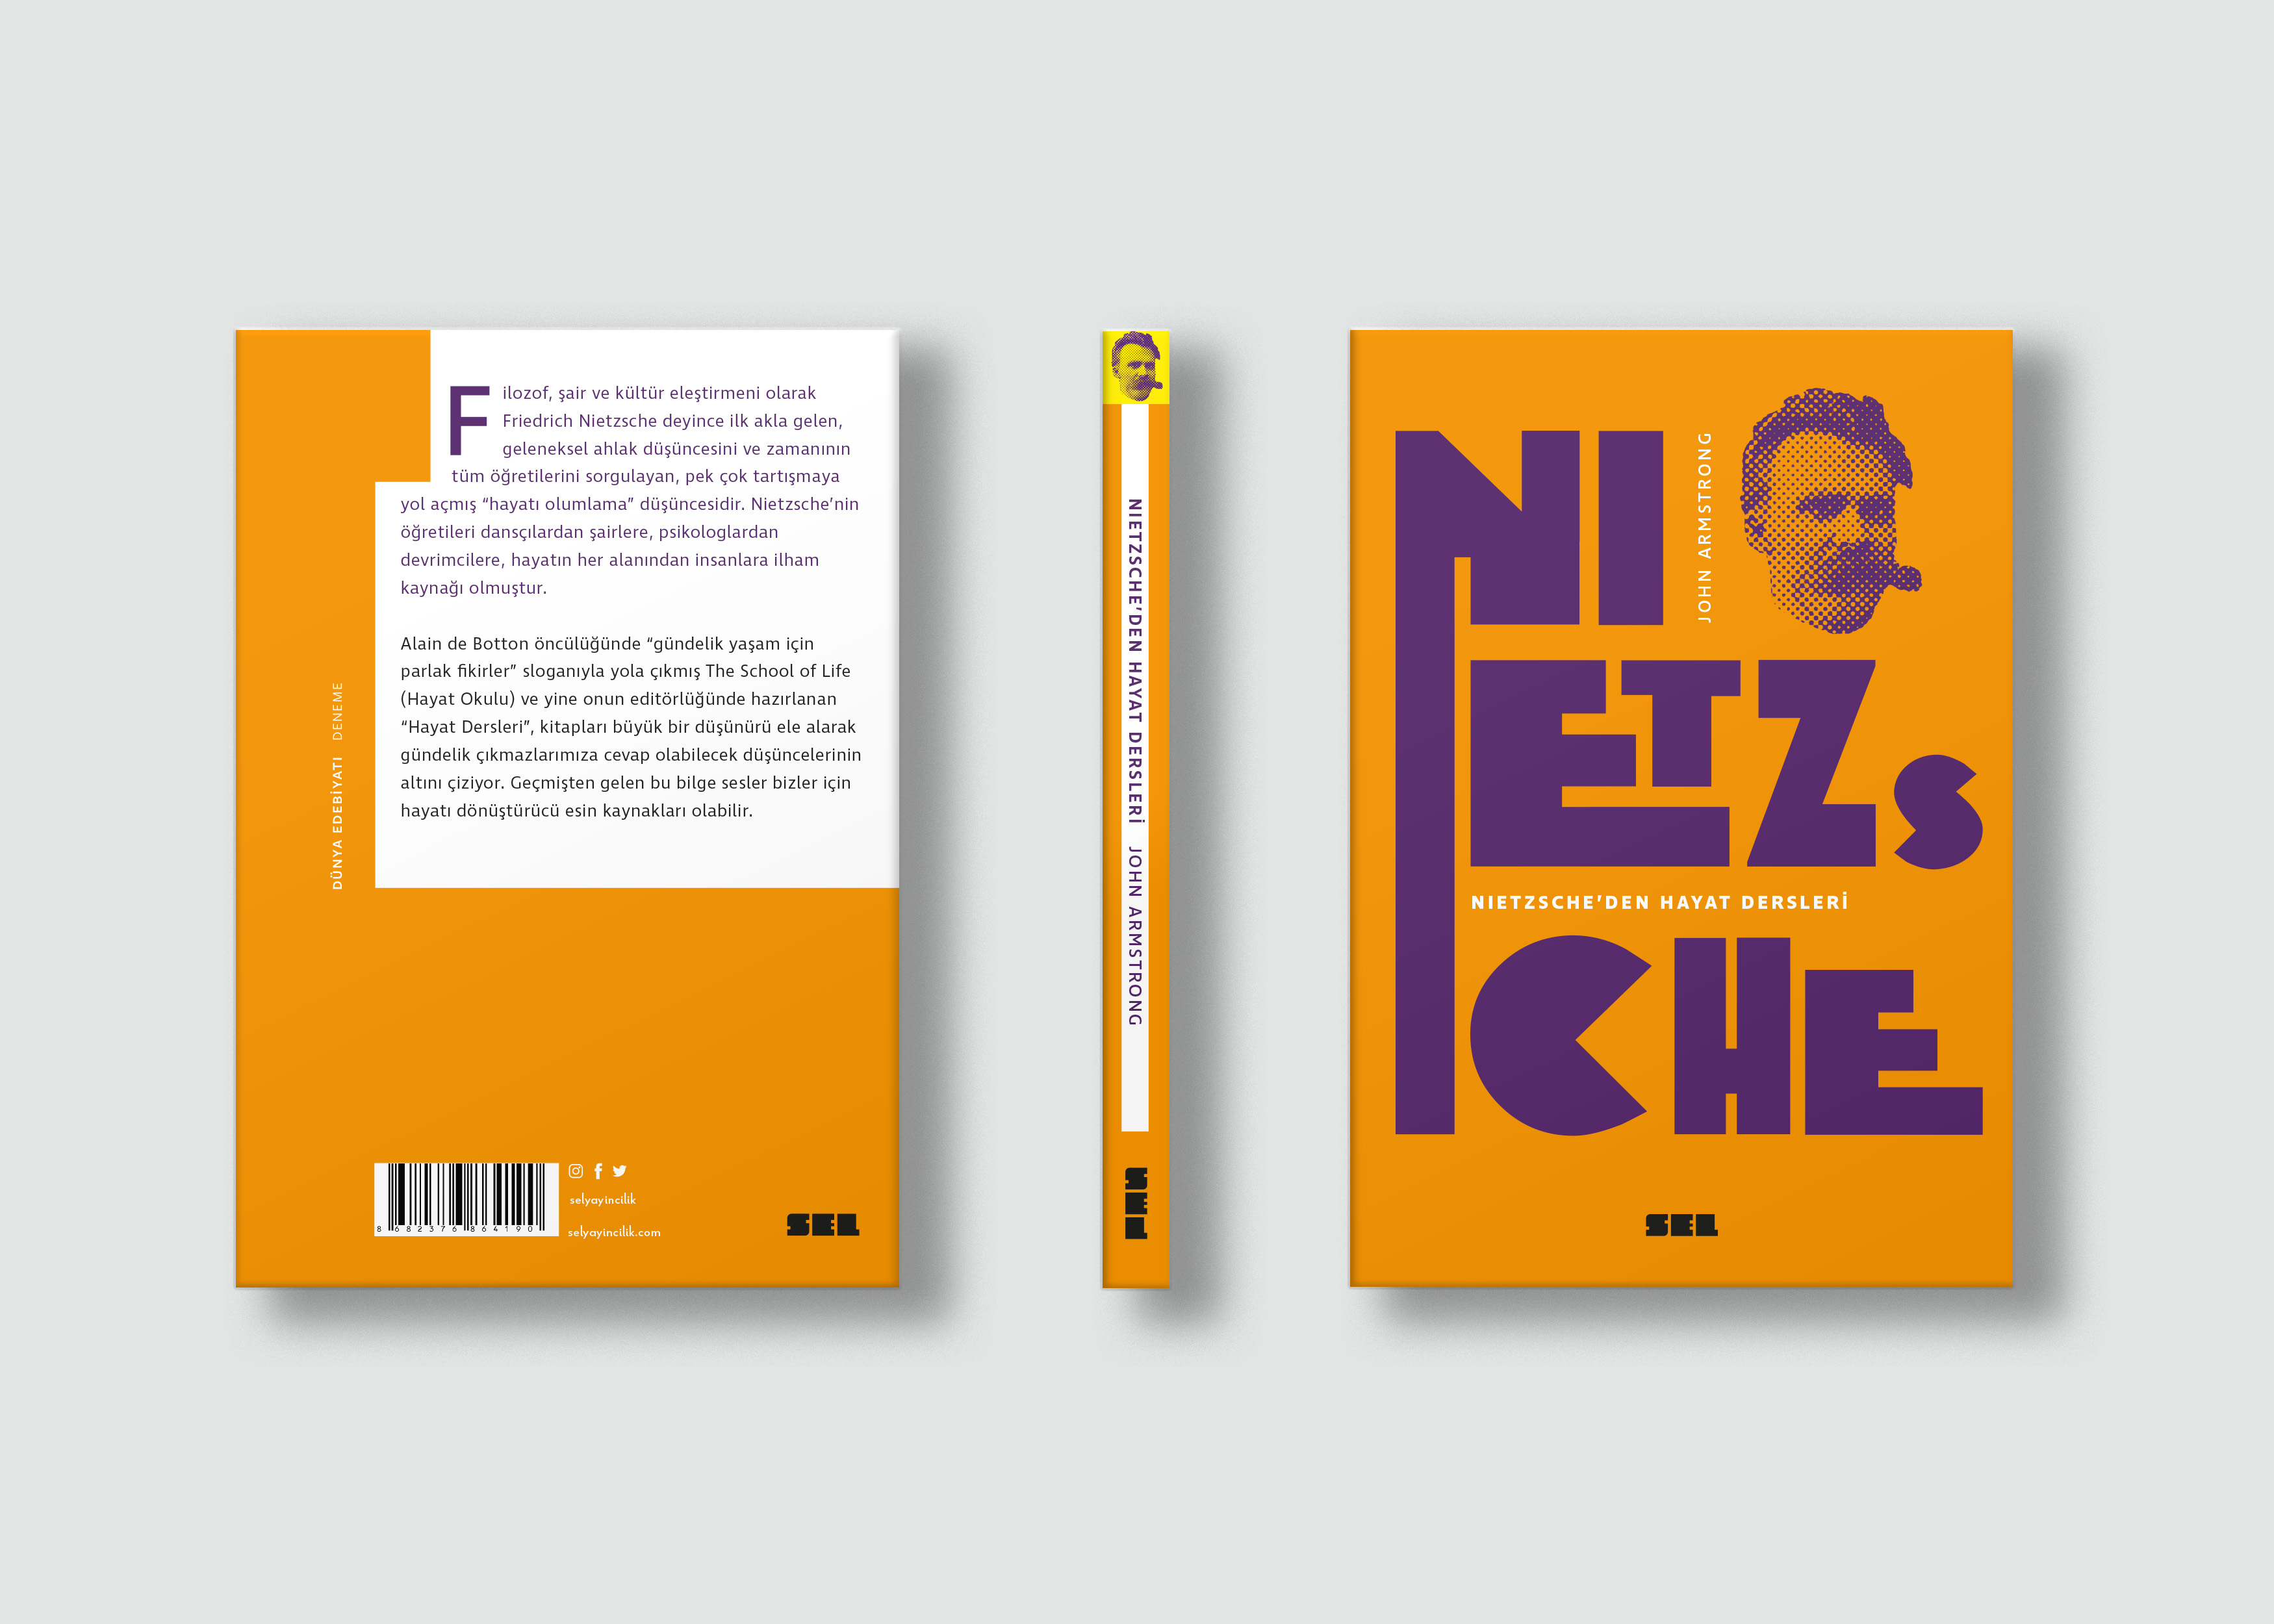 Nietzscheönarkasırt copy kopyası